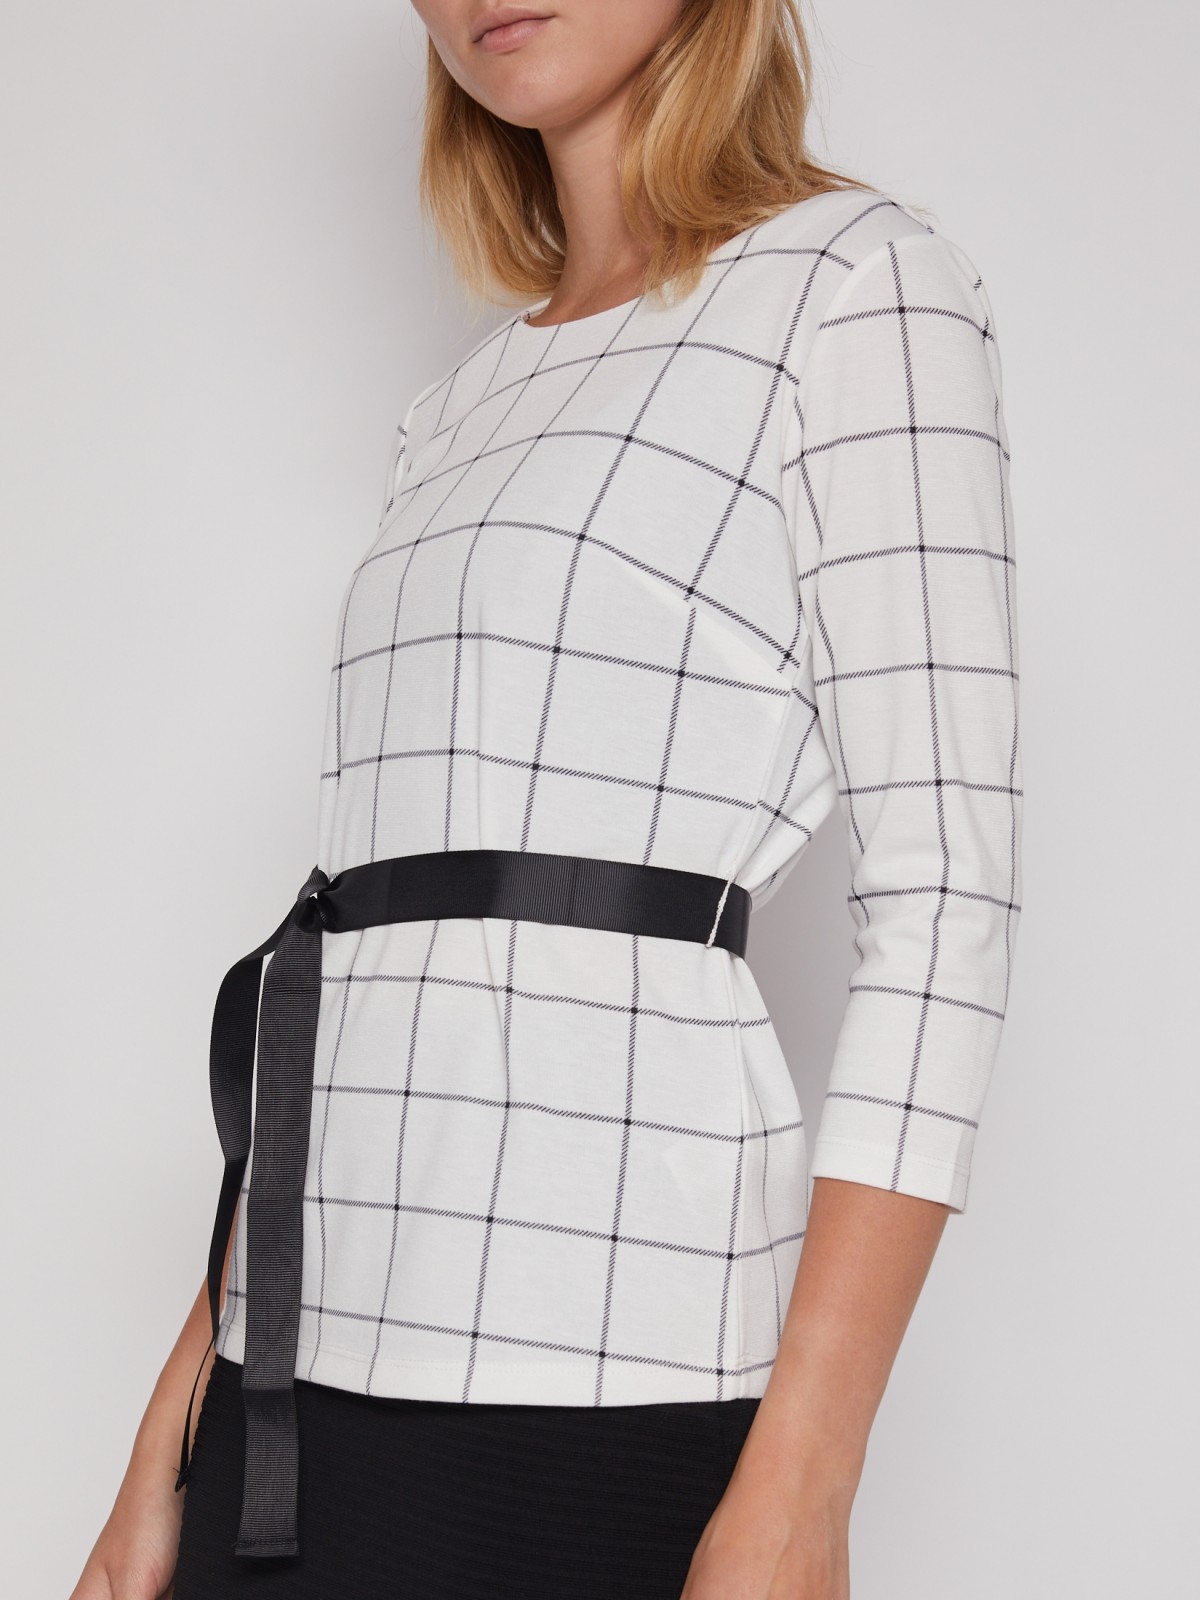 Трикотажная блузка с поясом zolla 022113110023, цвет белый, размер XS - фото 5